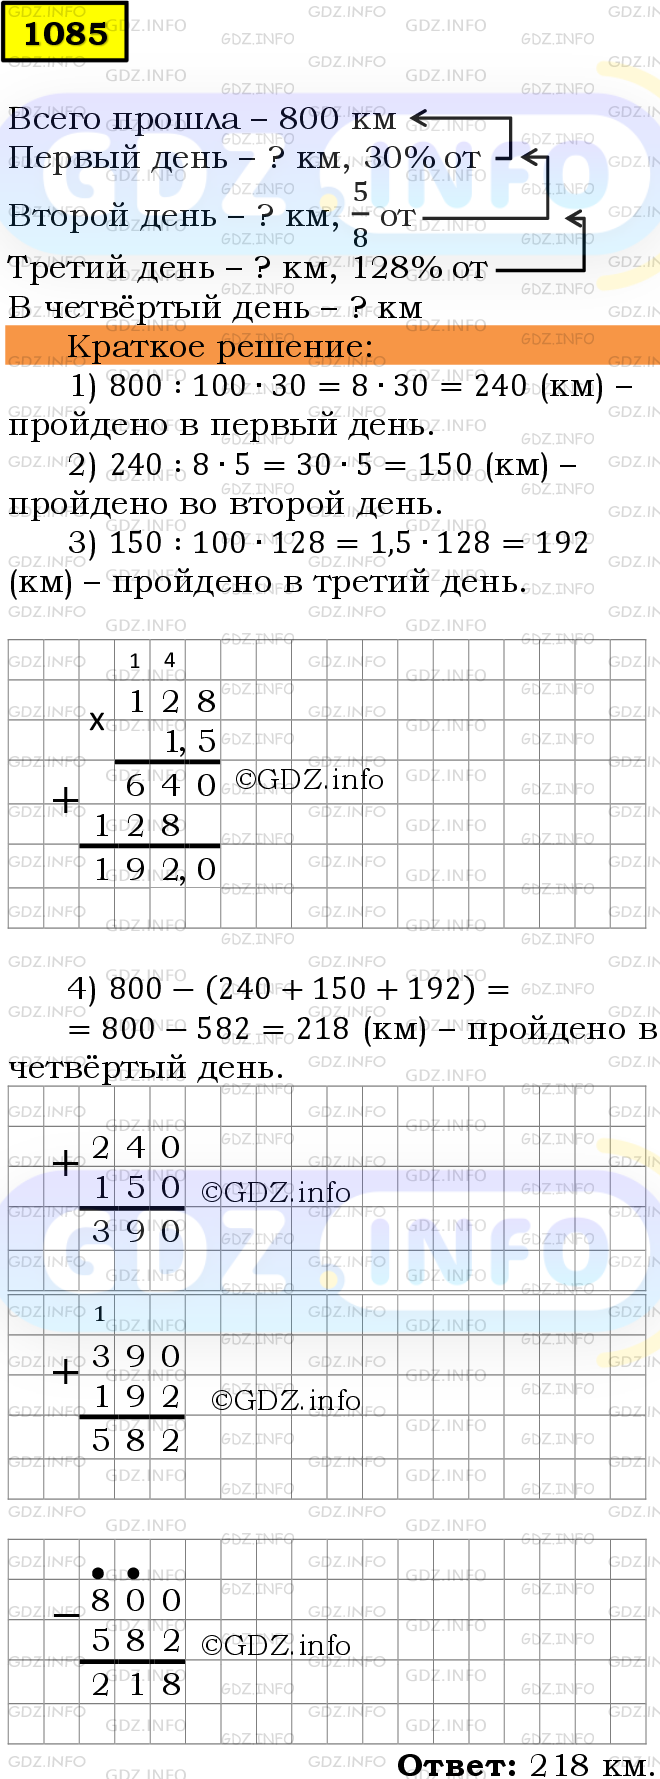 Фото решения 6: Номер №1085 из ГДЗ по Математике 5 класс: Мерзляк А.Г. г.